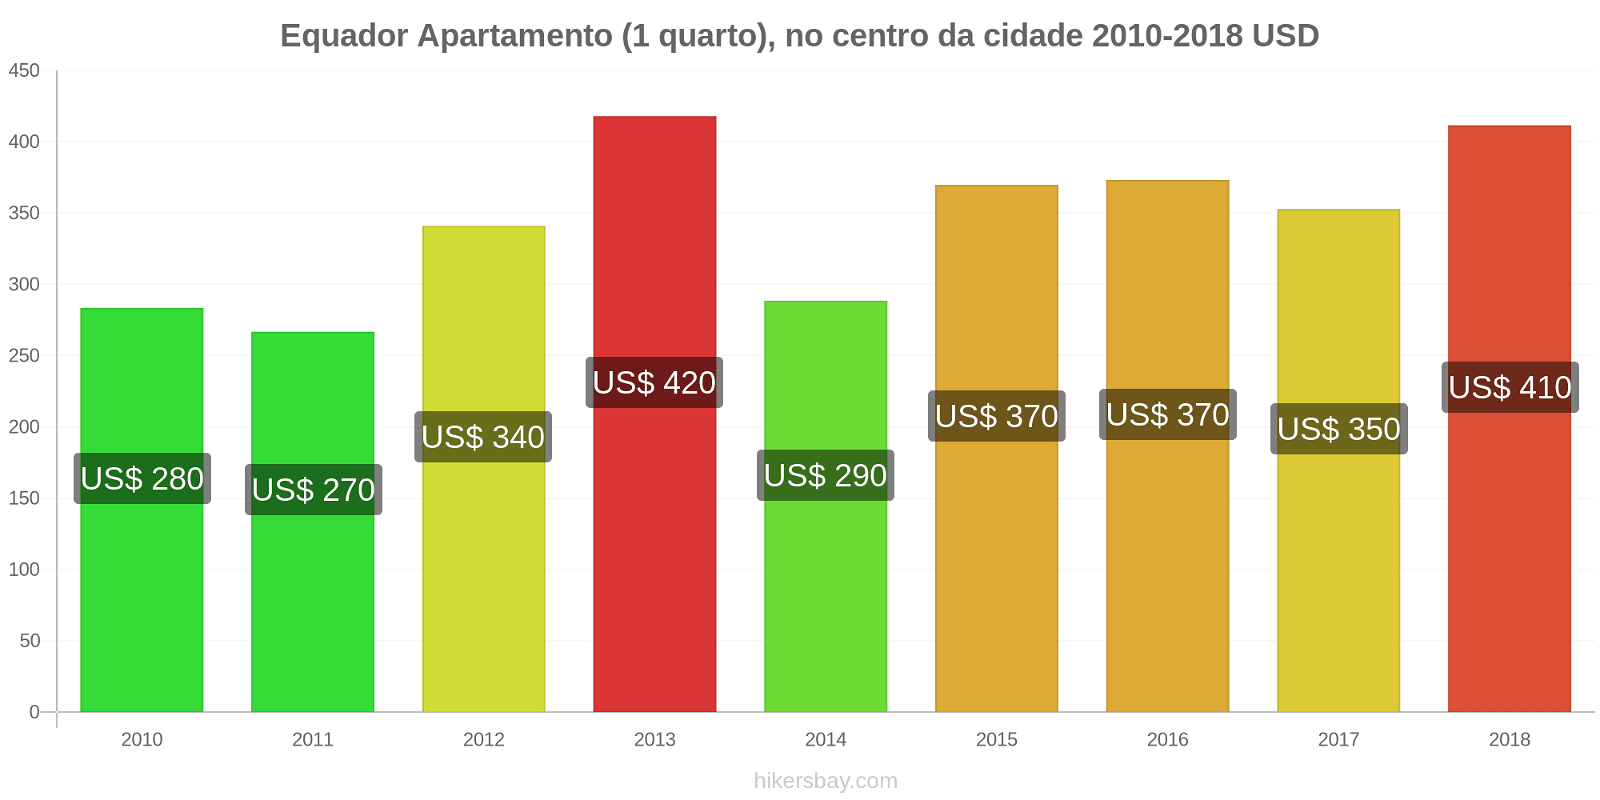 Equador mudanças de preços Apartamento (1 quarto) no centro da cidade hikersbay.com